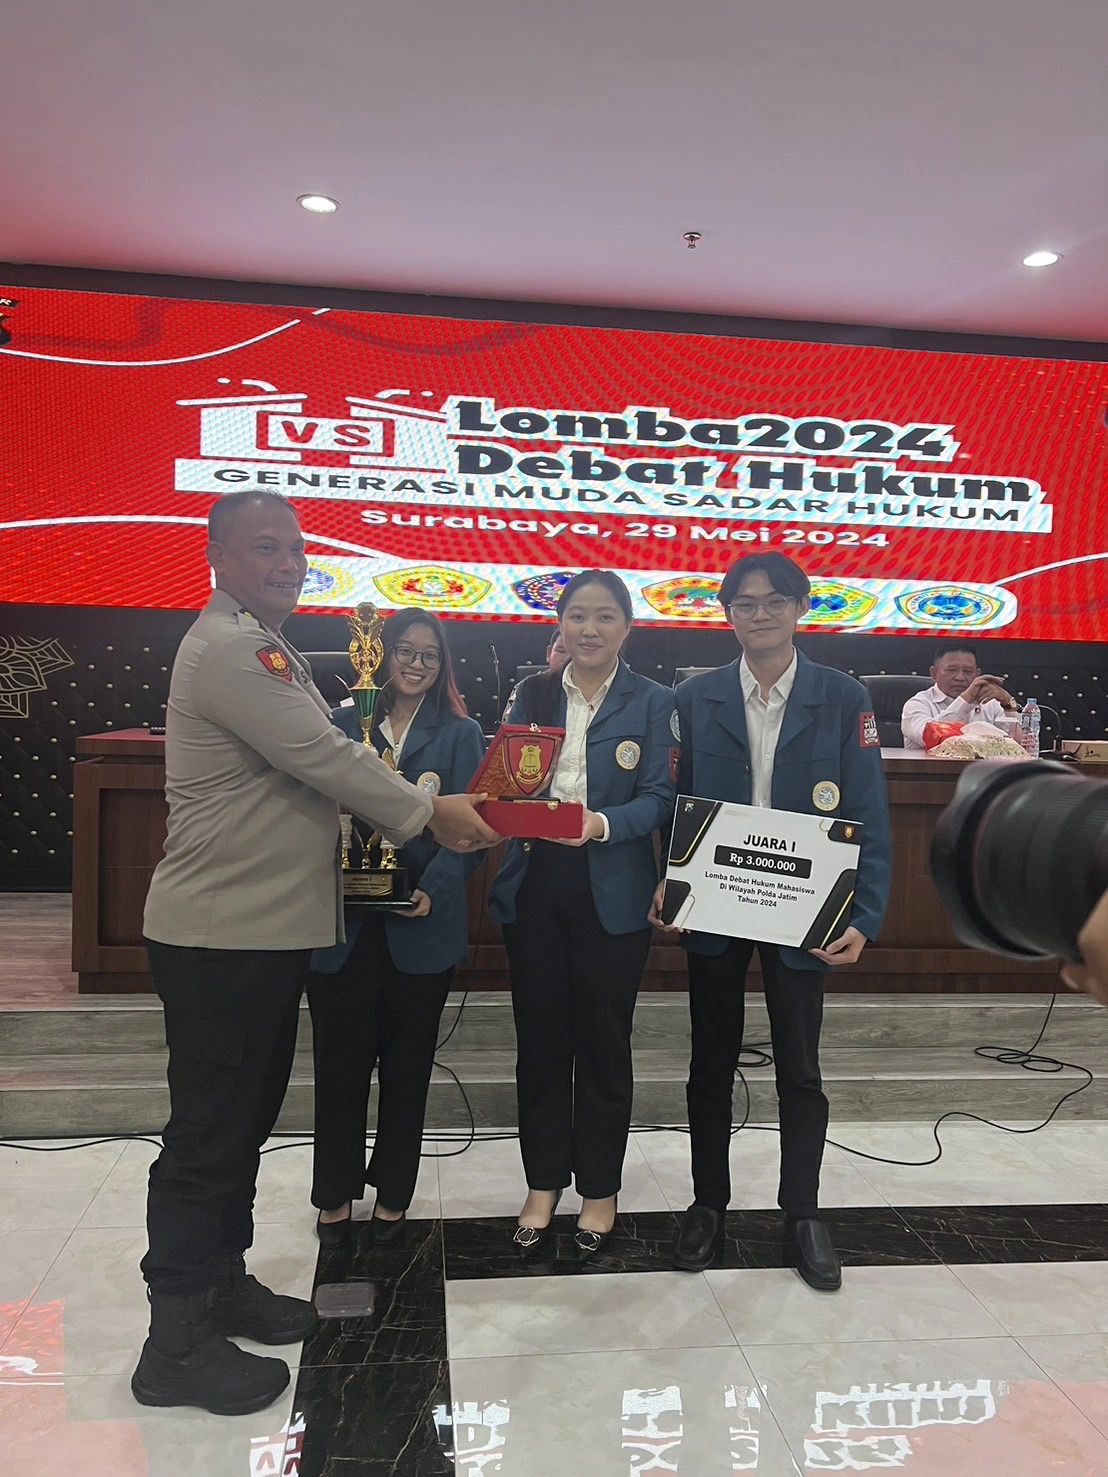 Delegasi FH UNAIR Raih Juara I Lomba Debat Hukum di Polda Jatim